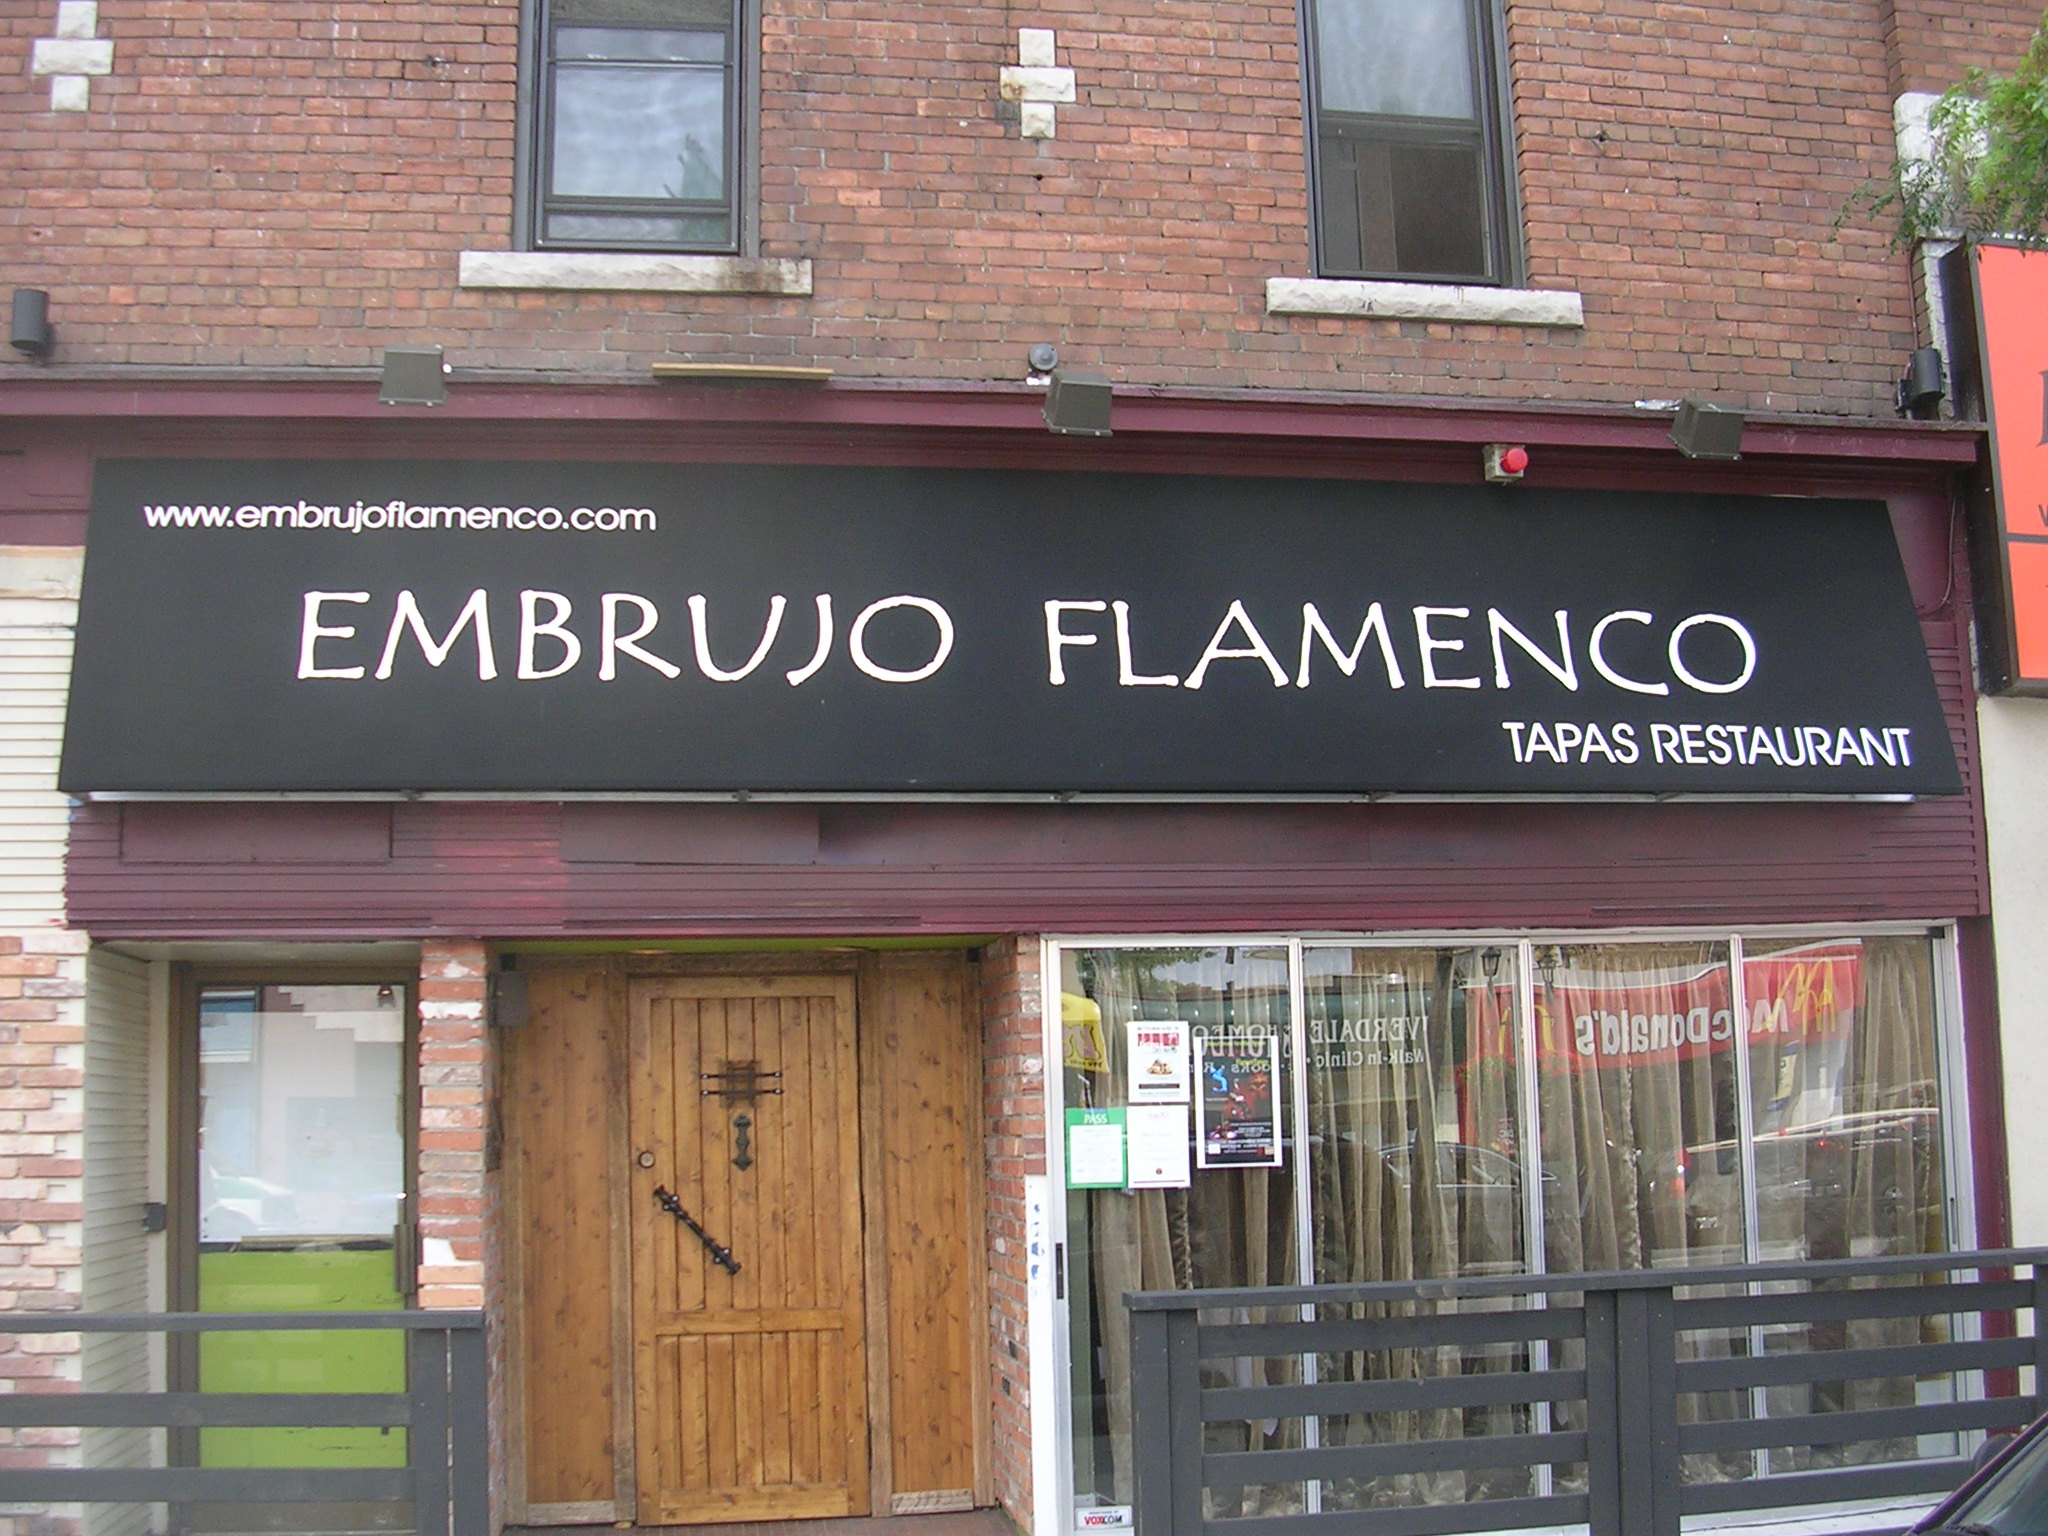 Embrujo Flemenco 001.jpg